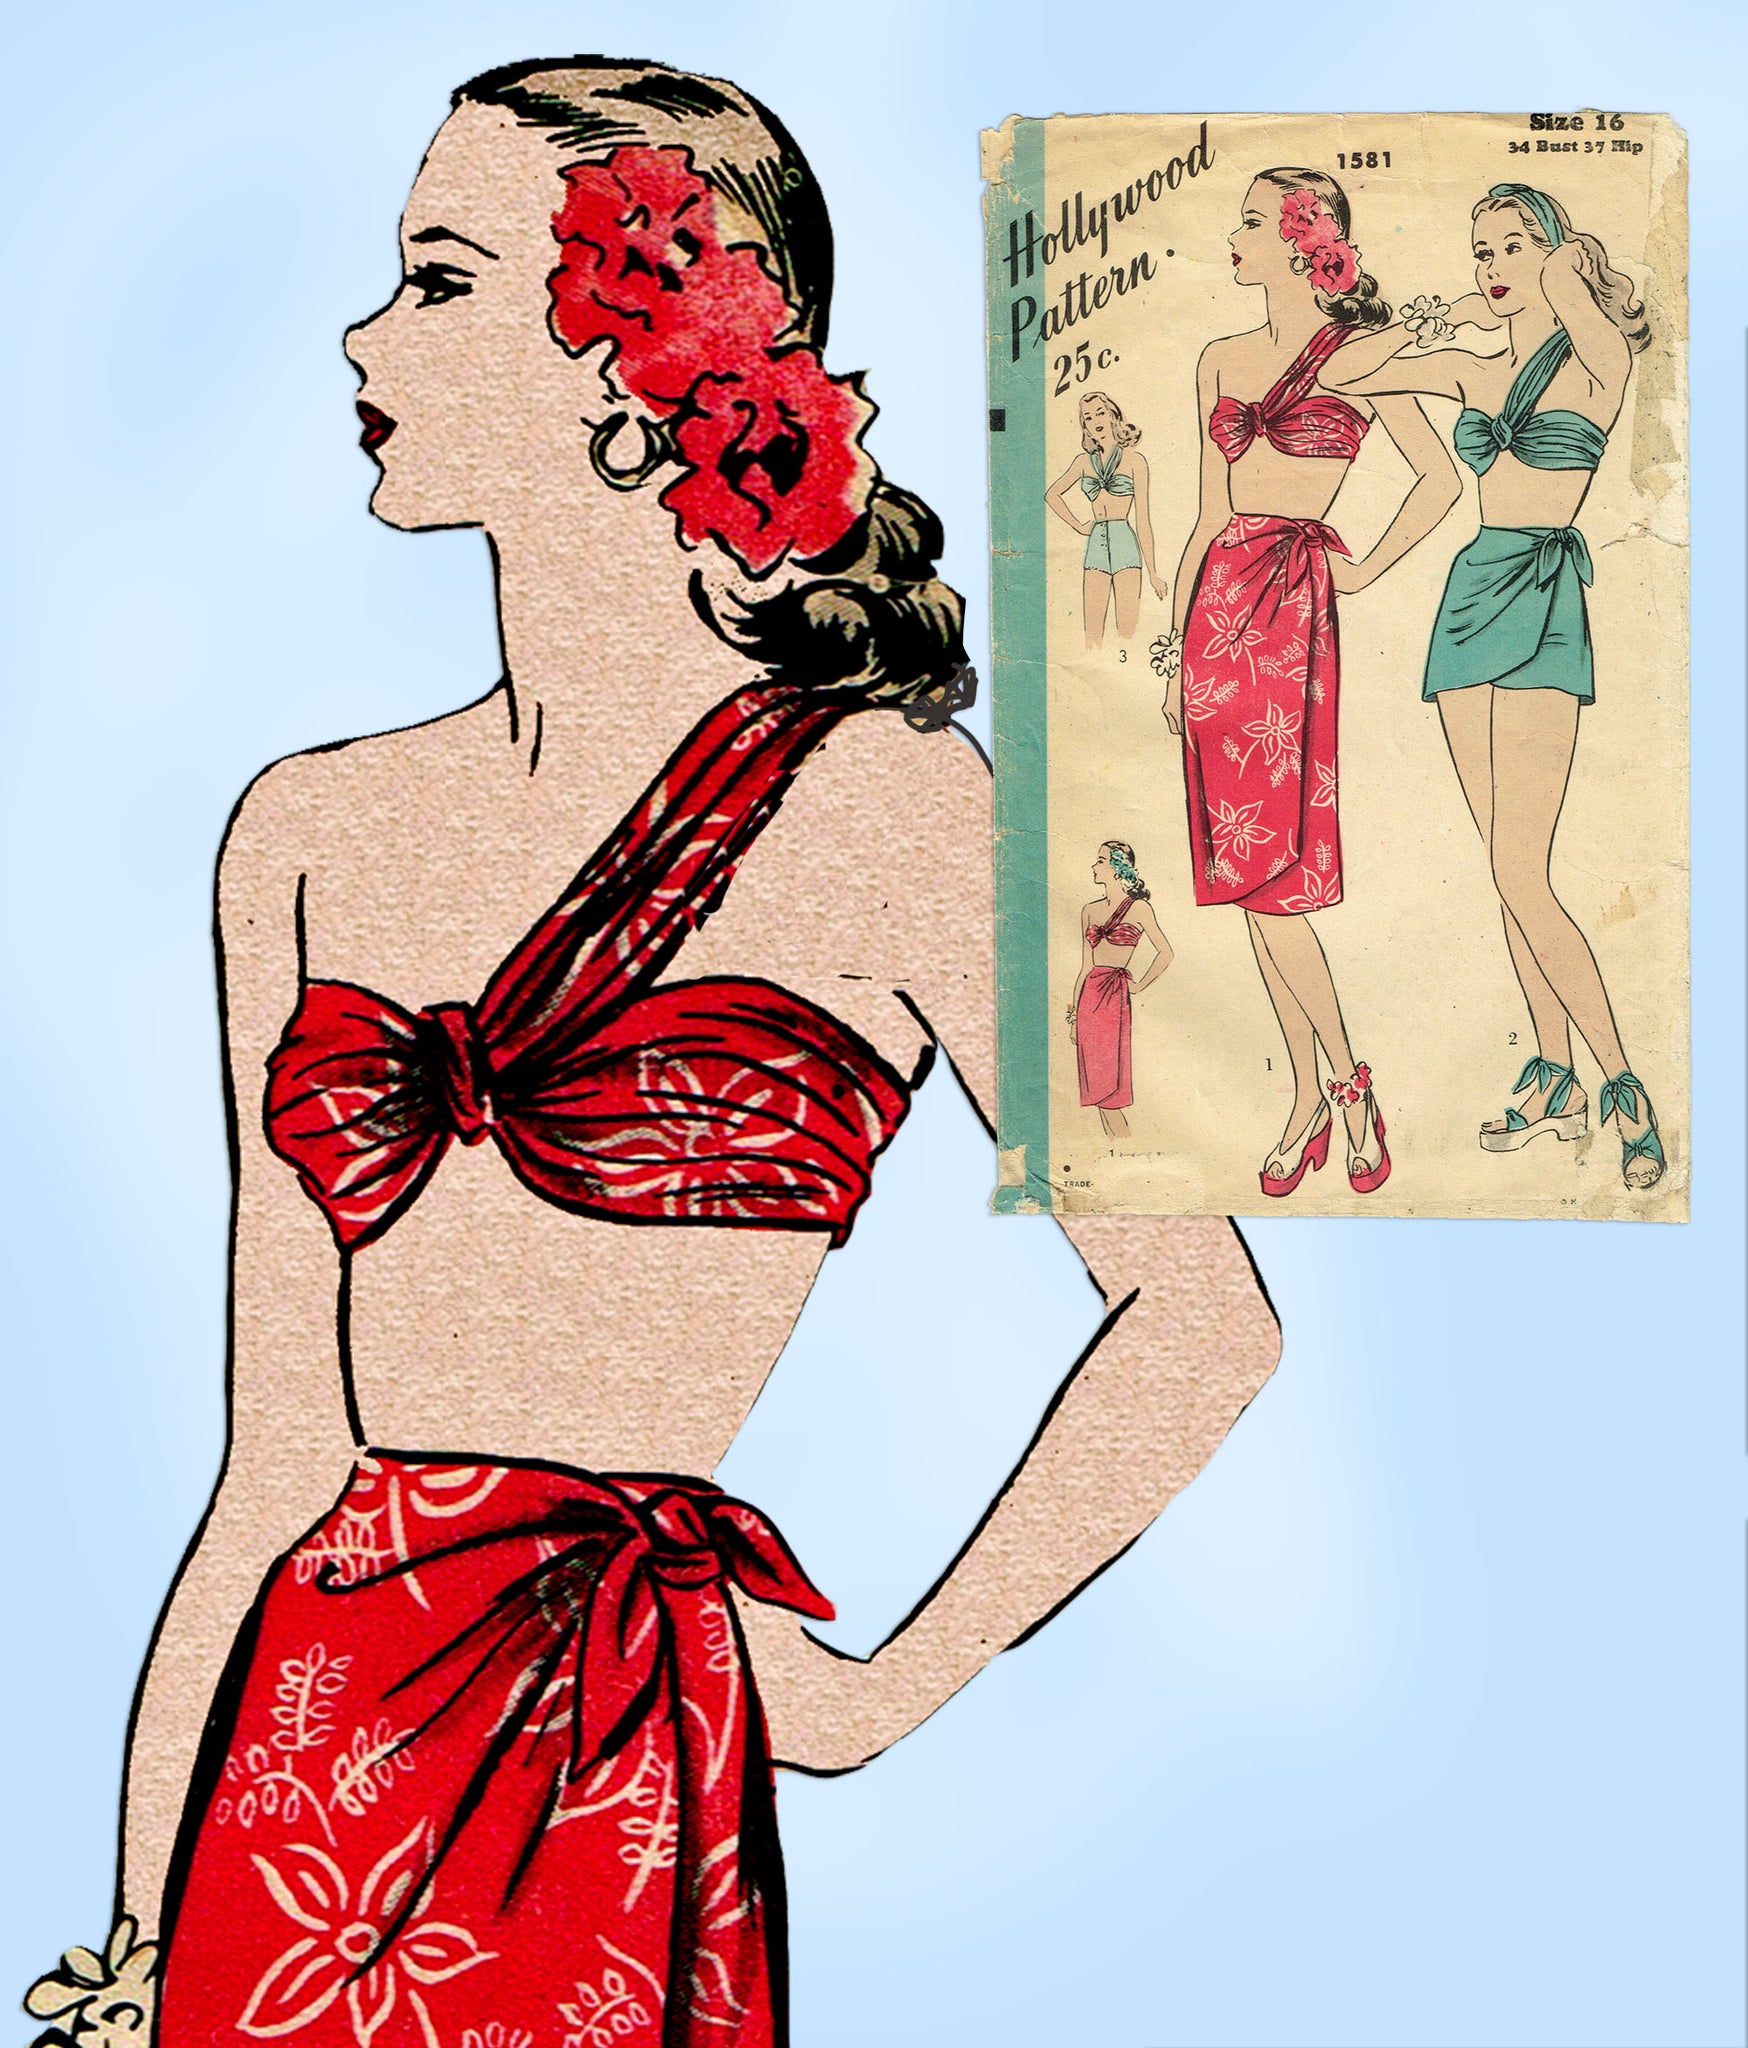 Hollywood 1348: 1940s Misses Pants Suit Sz 32 B Vintage Sewing Pattern –  Vintage4me2